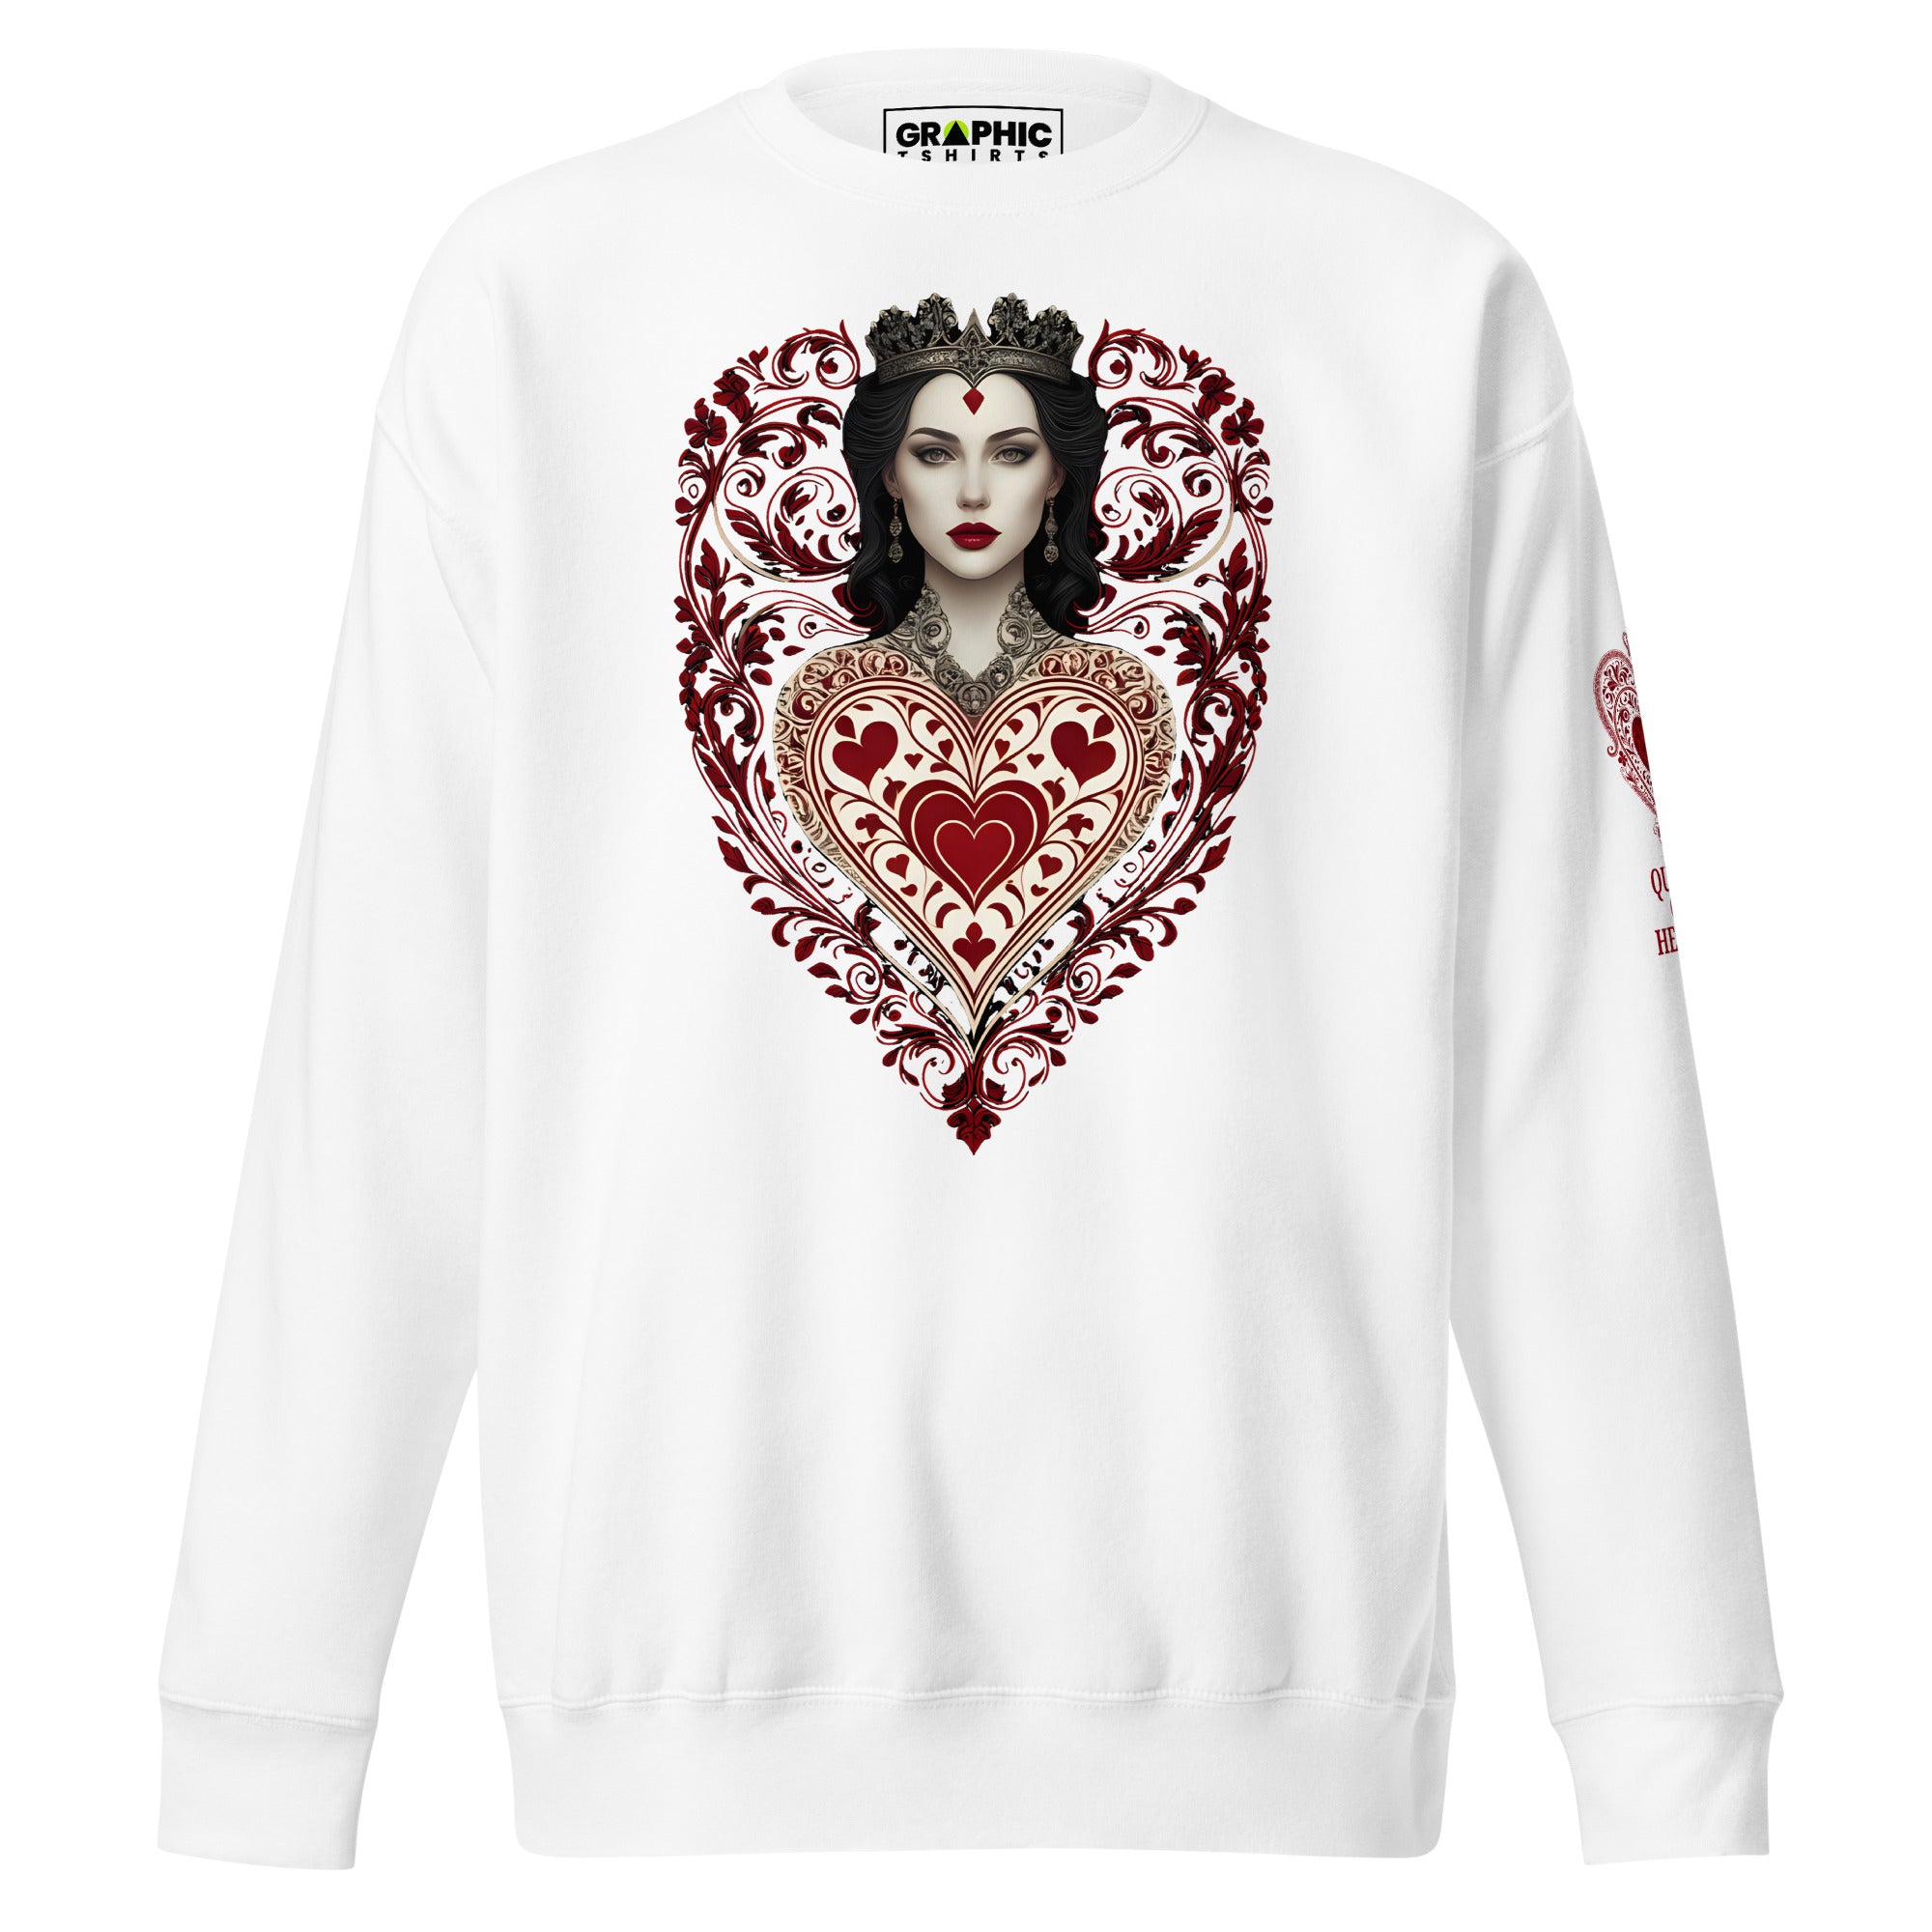 Unisex Premium Sweatshirt - Queen Of Hearts Series v.22